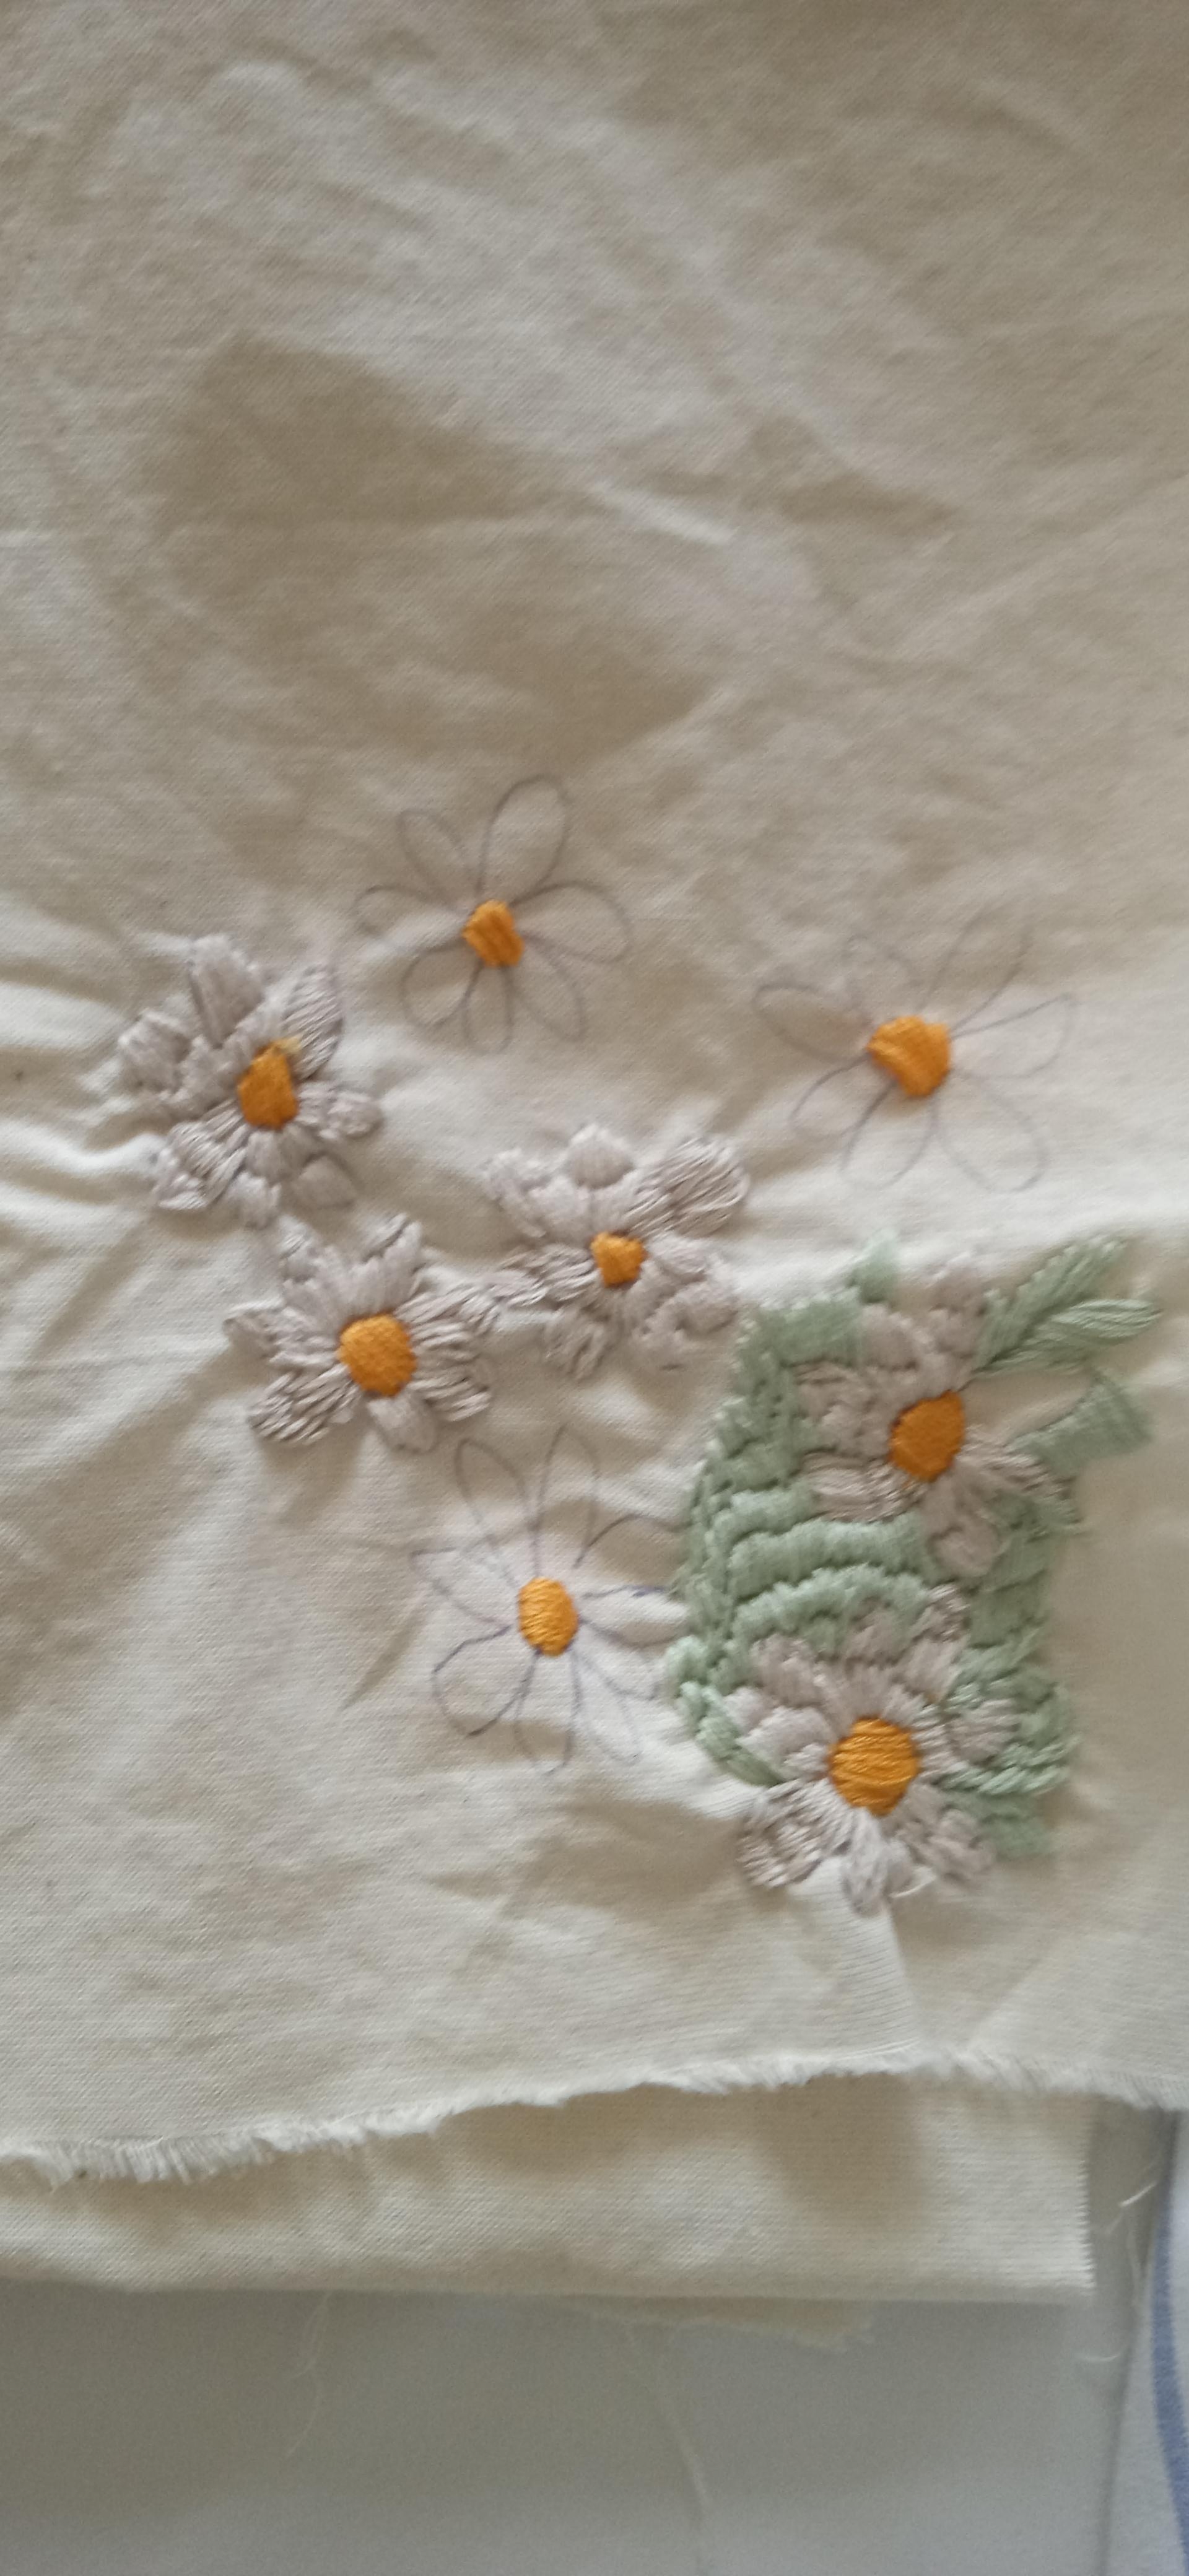 Vielleicht wird es ein kleines Tischdeckchen # embroidery #iloveembroidery 🧵📍🌼